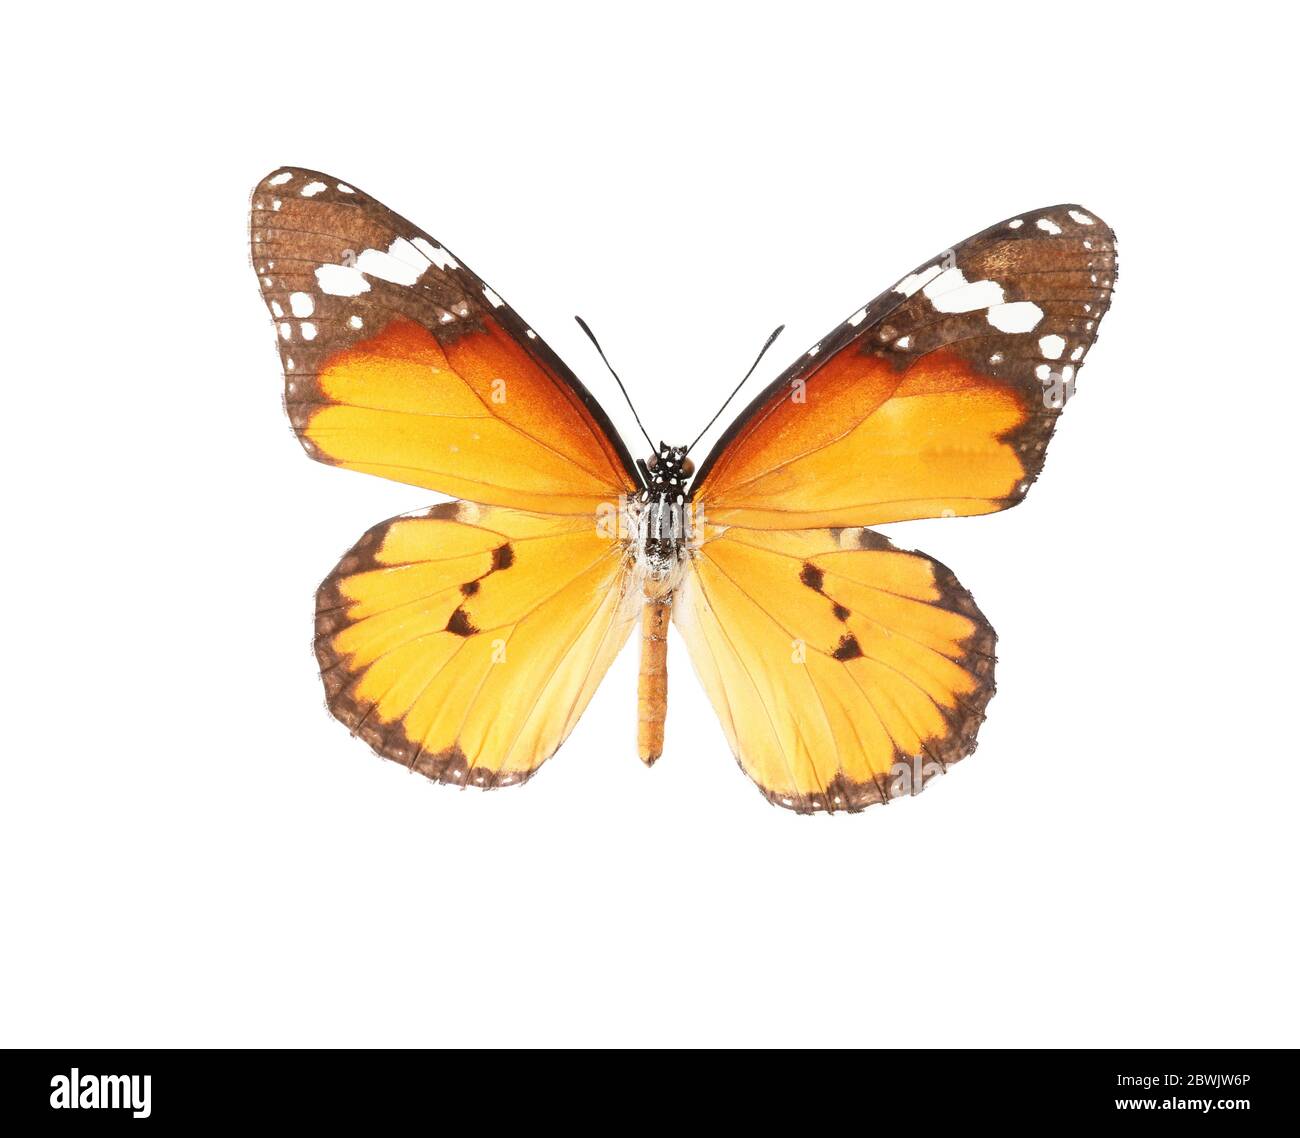 Magnifique papillon sur fond blanc Banque D'Images